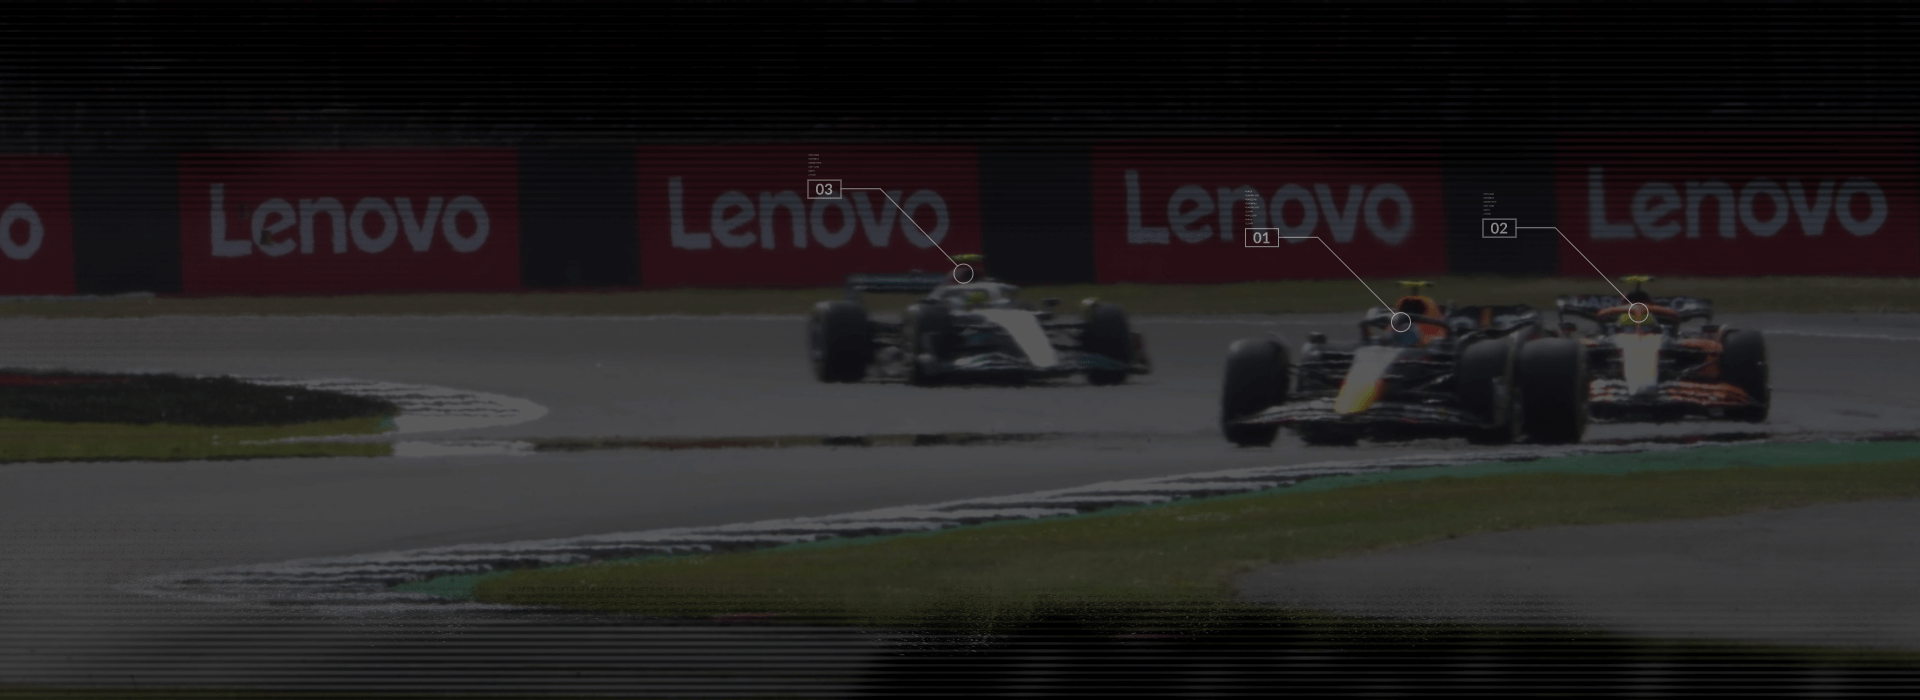 3 coches de F1 en una pista de carreras con pancartas de Lenovo de fondo